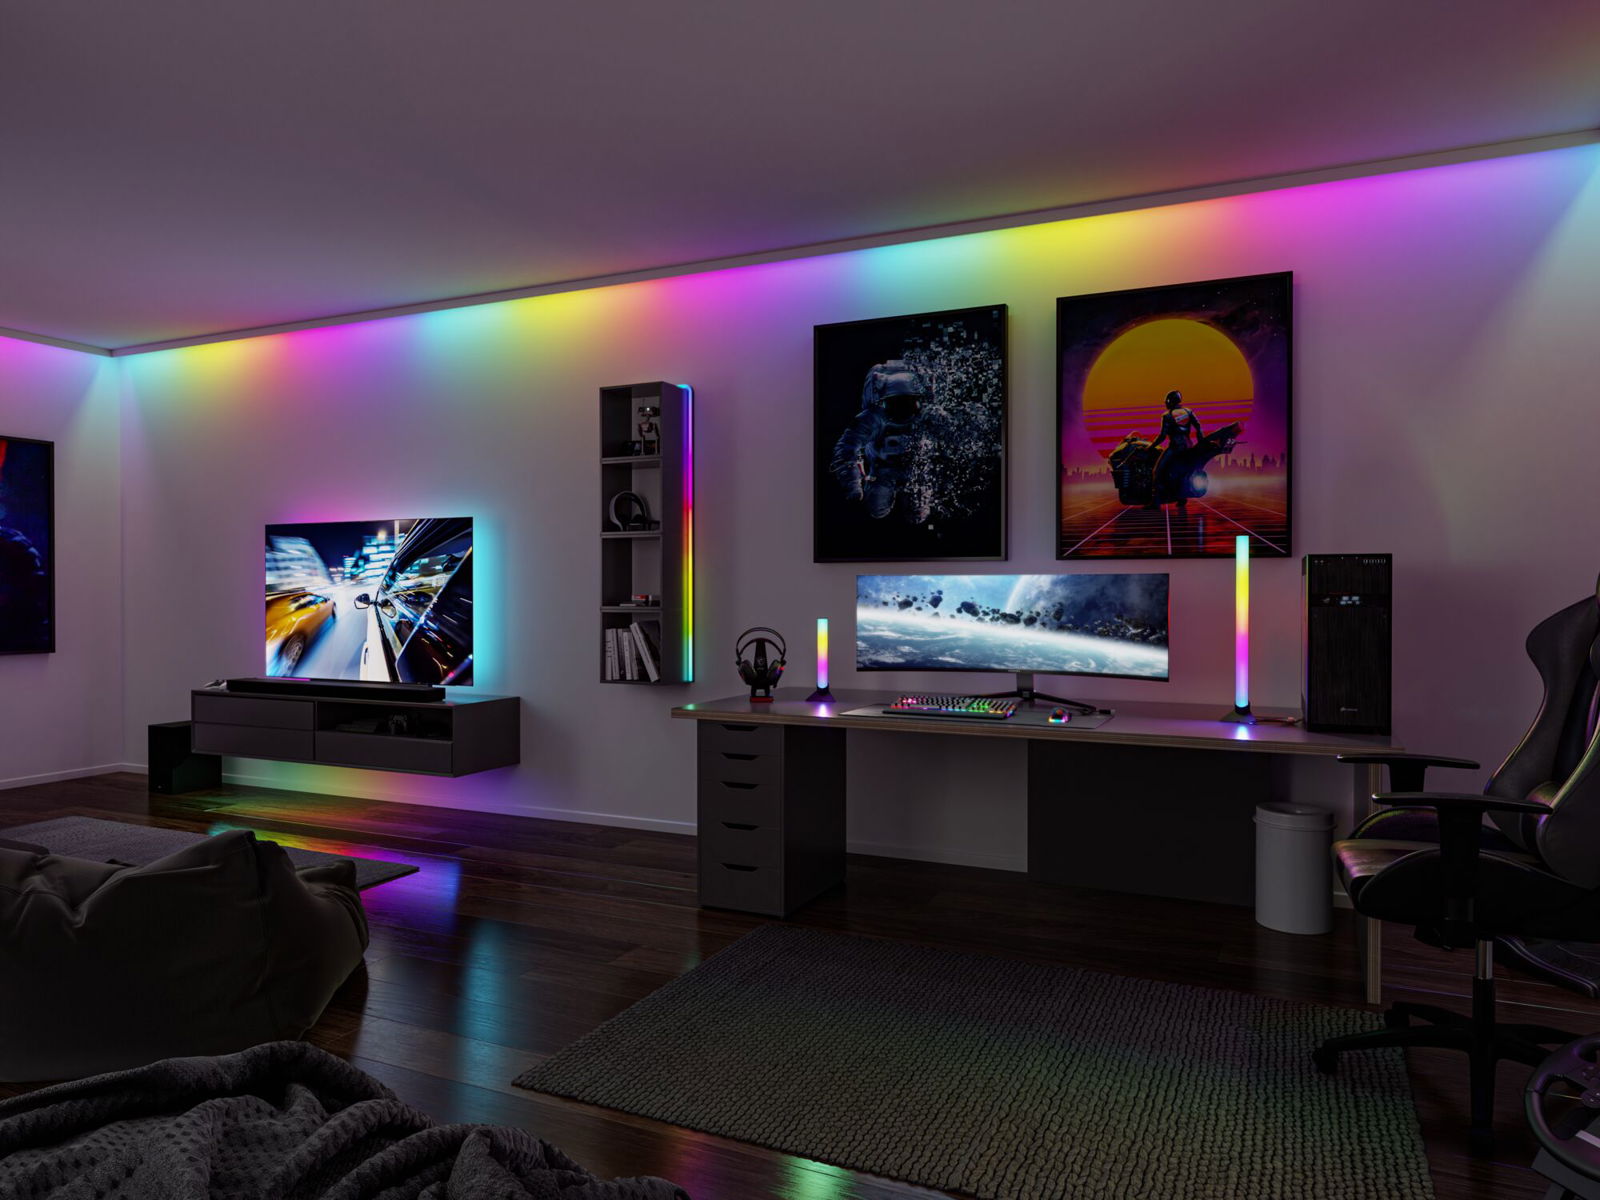 EntertainLED Lightbar Dynamic RGB 2x1W 2x48lm RGB